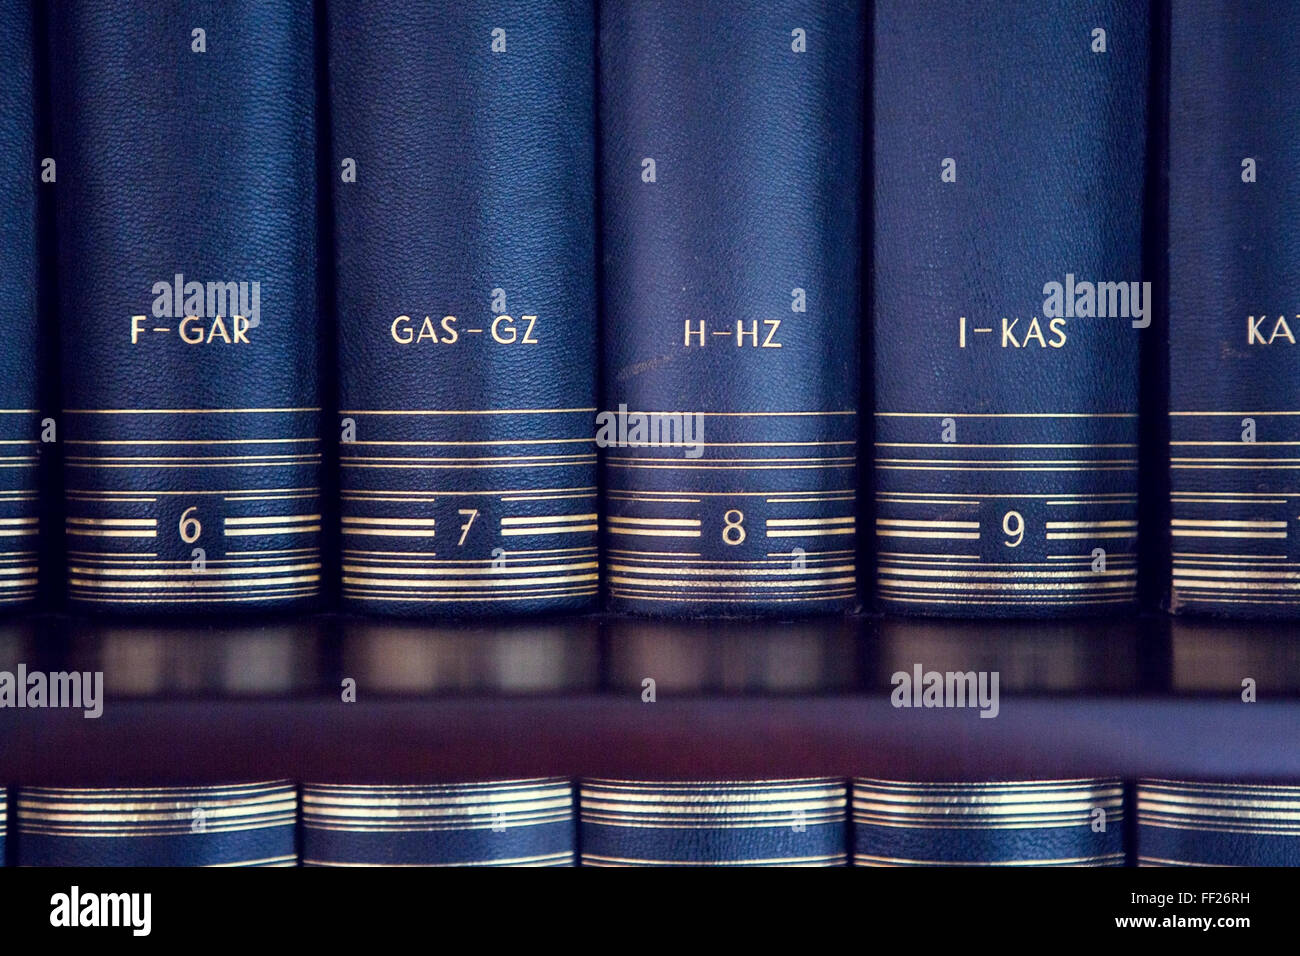 closeup of lexicon on a bookshelf Stock Photo